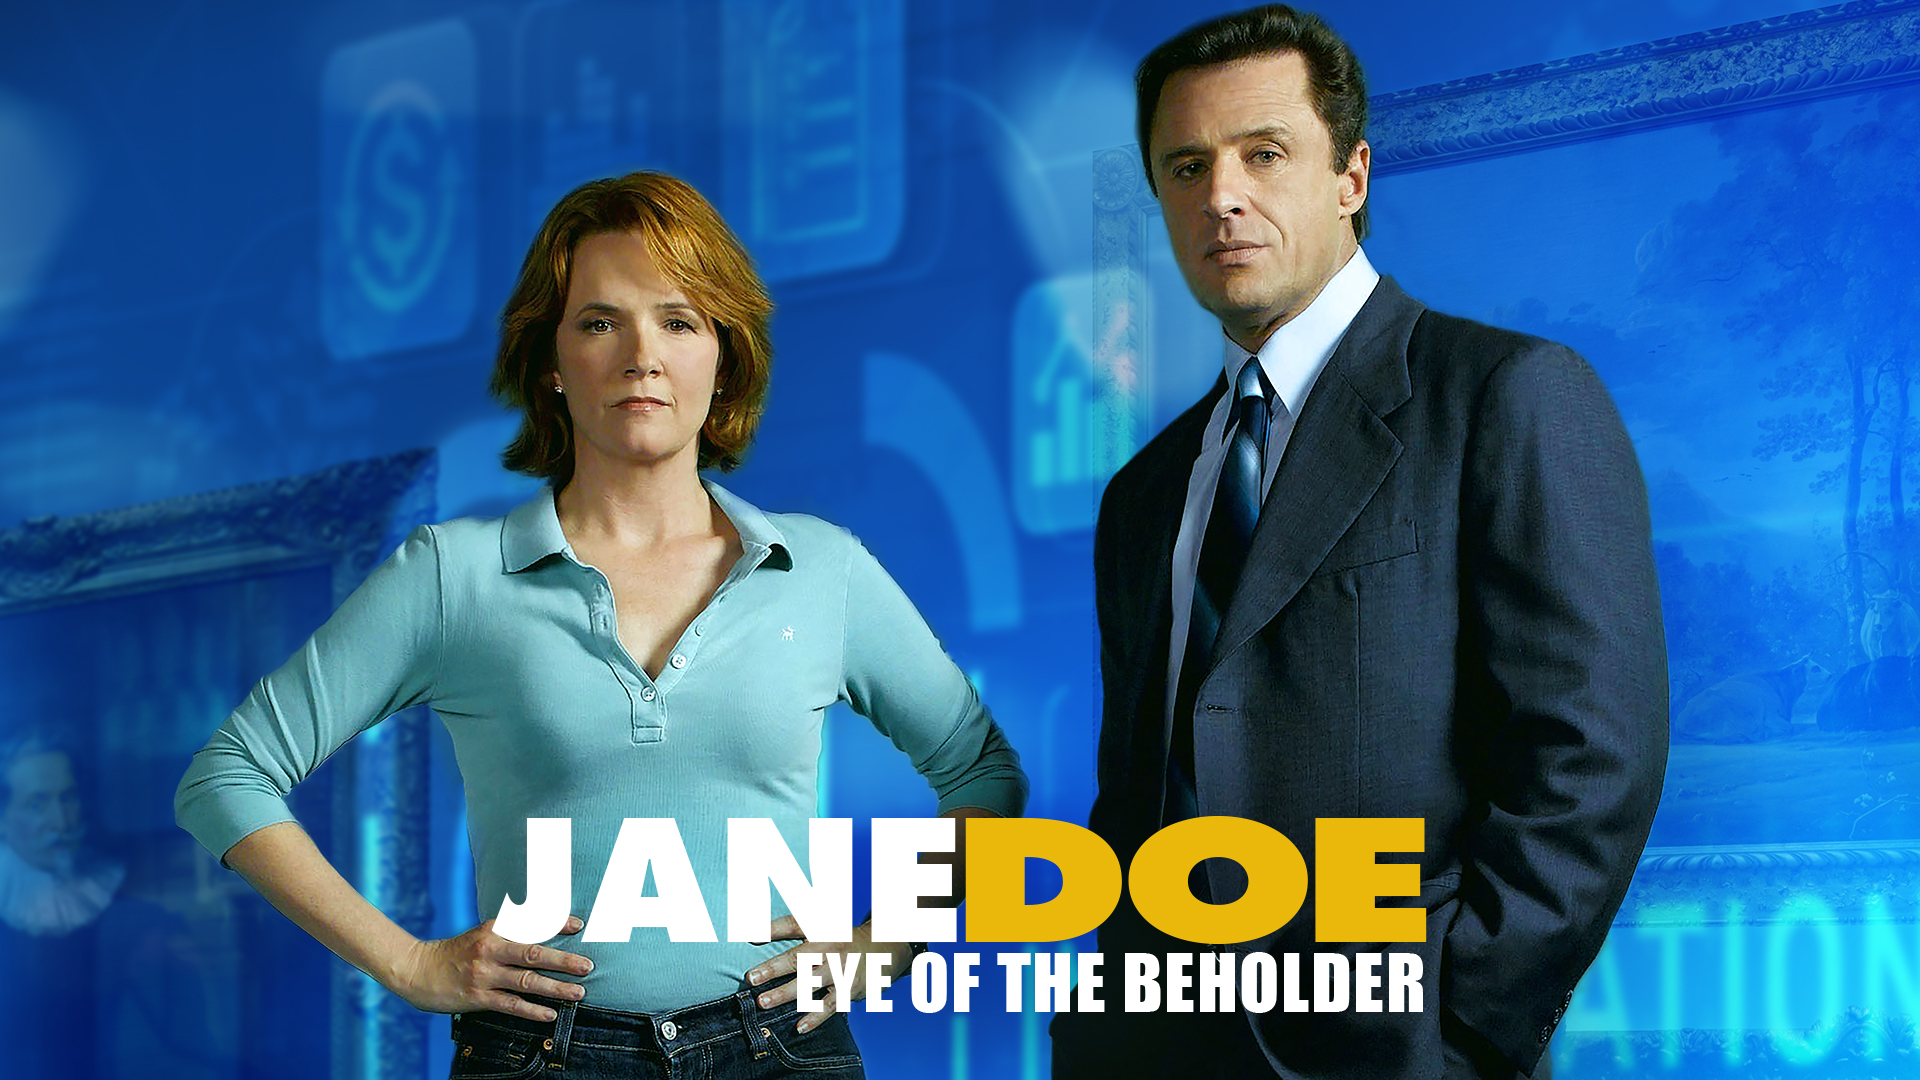 jane doe eye of the beholder